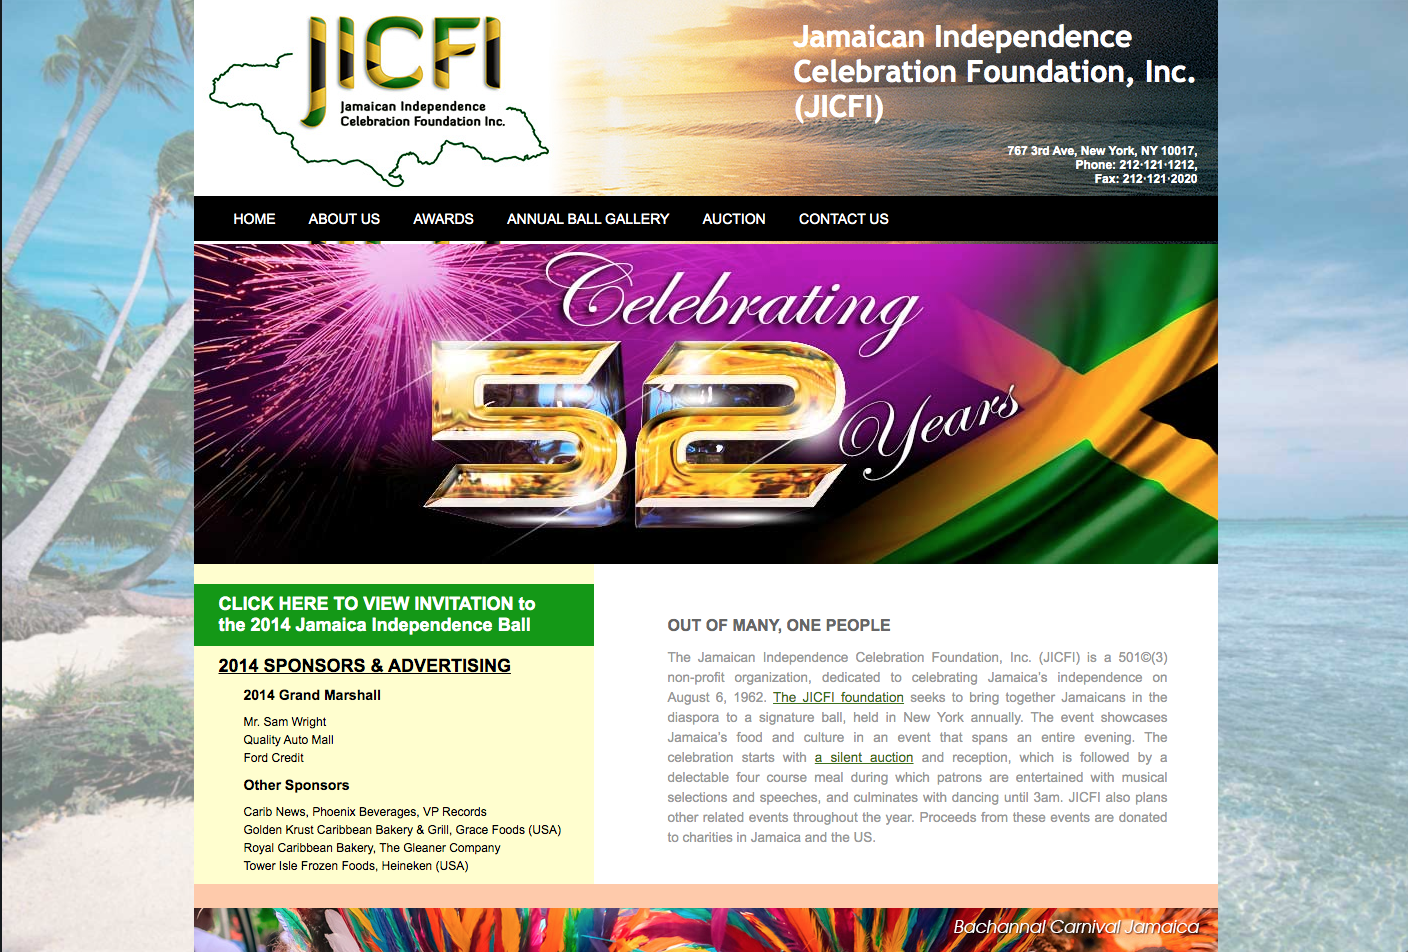 Jamaica Independence Celebration Fondation Inc.